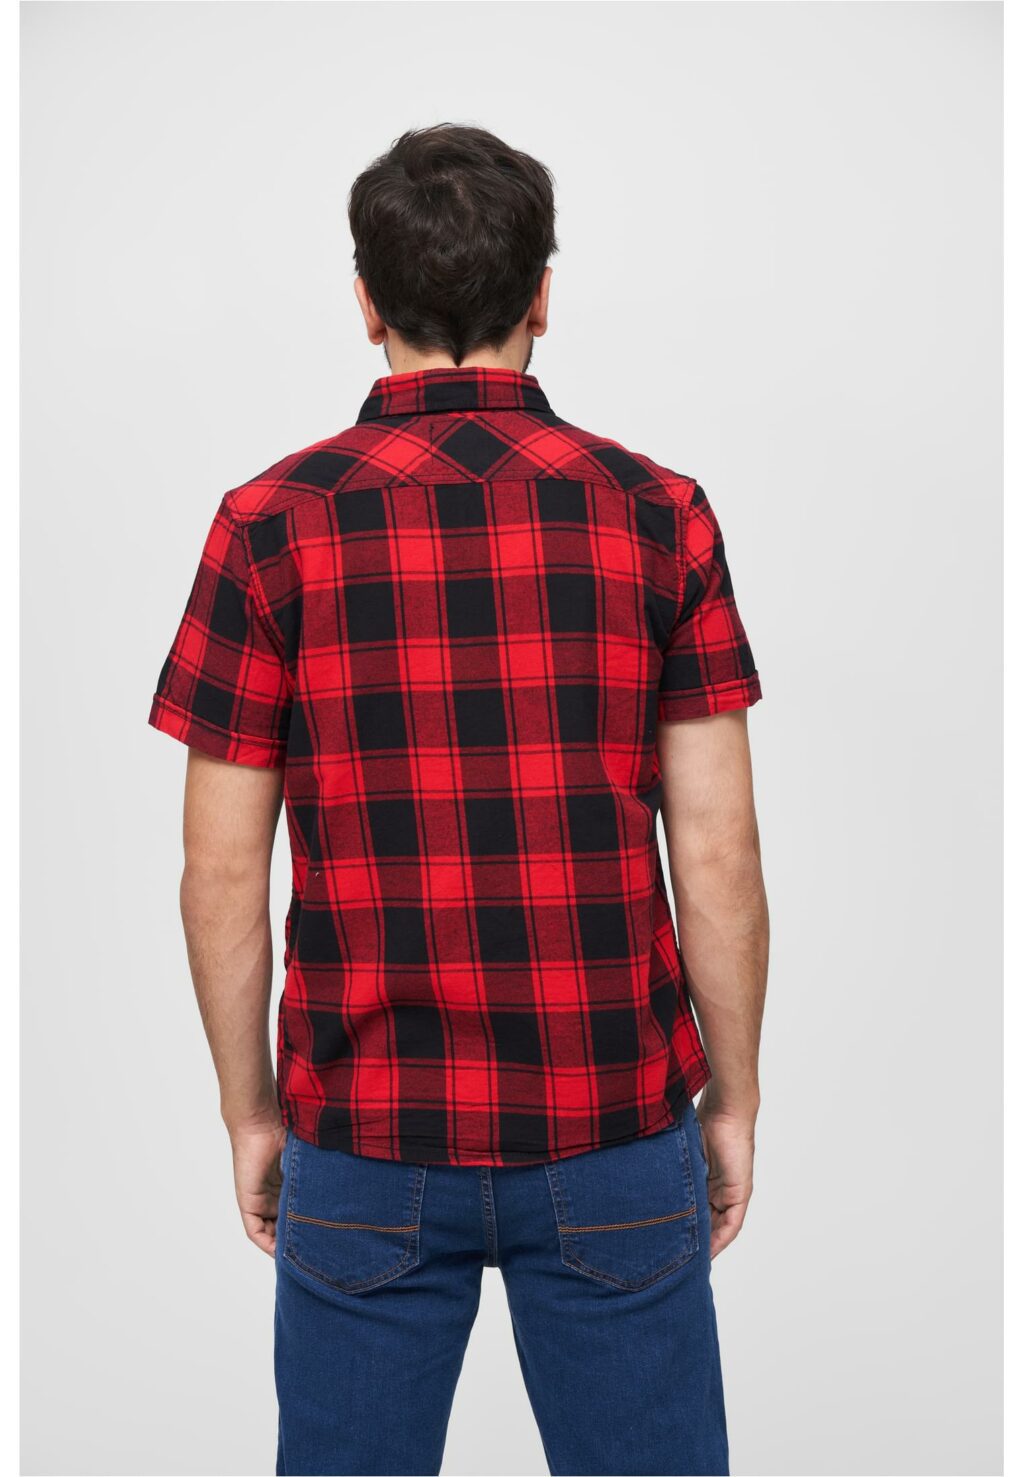 Brandit Checkshirt Halfsleeve red/black BD4032